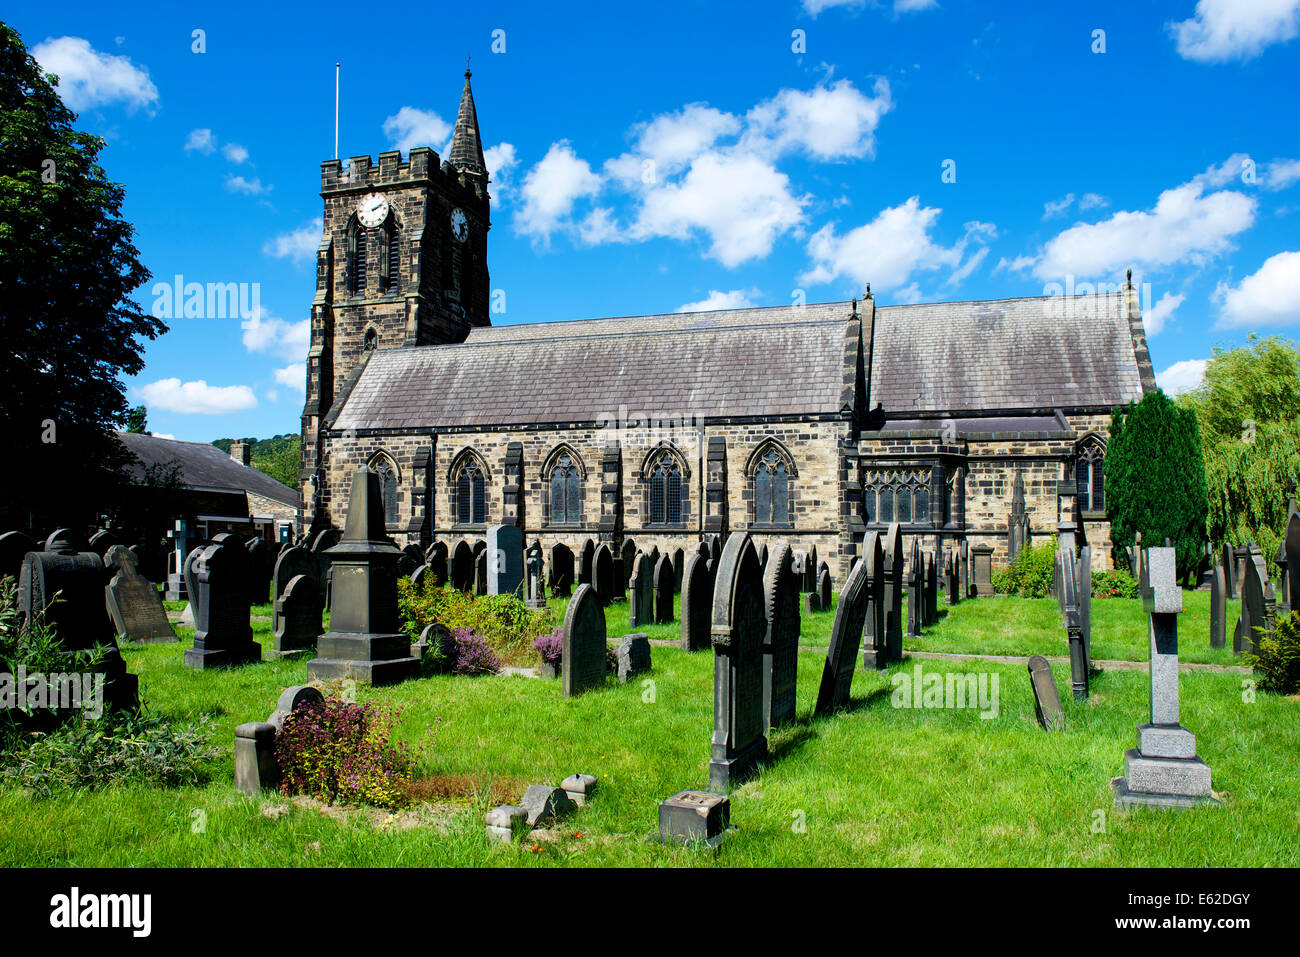 The Church of the Good Shepherd, Mytholmroyd, Calderdale, West Yorkshire, England UK Stock Photo